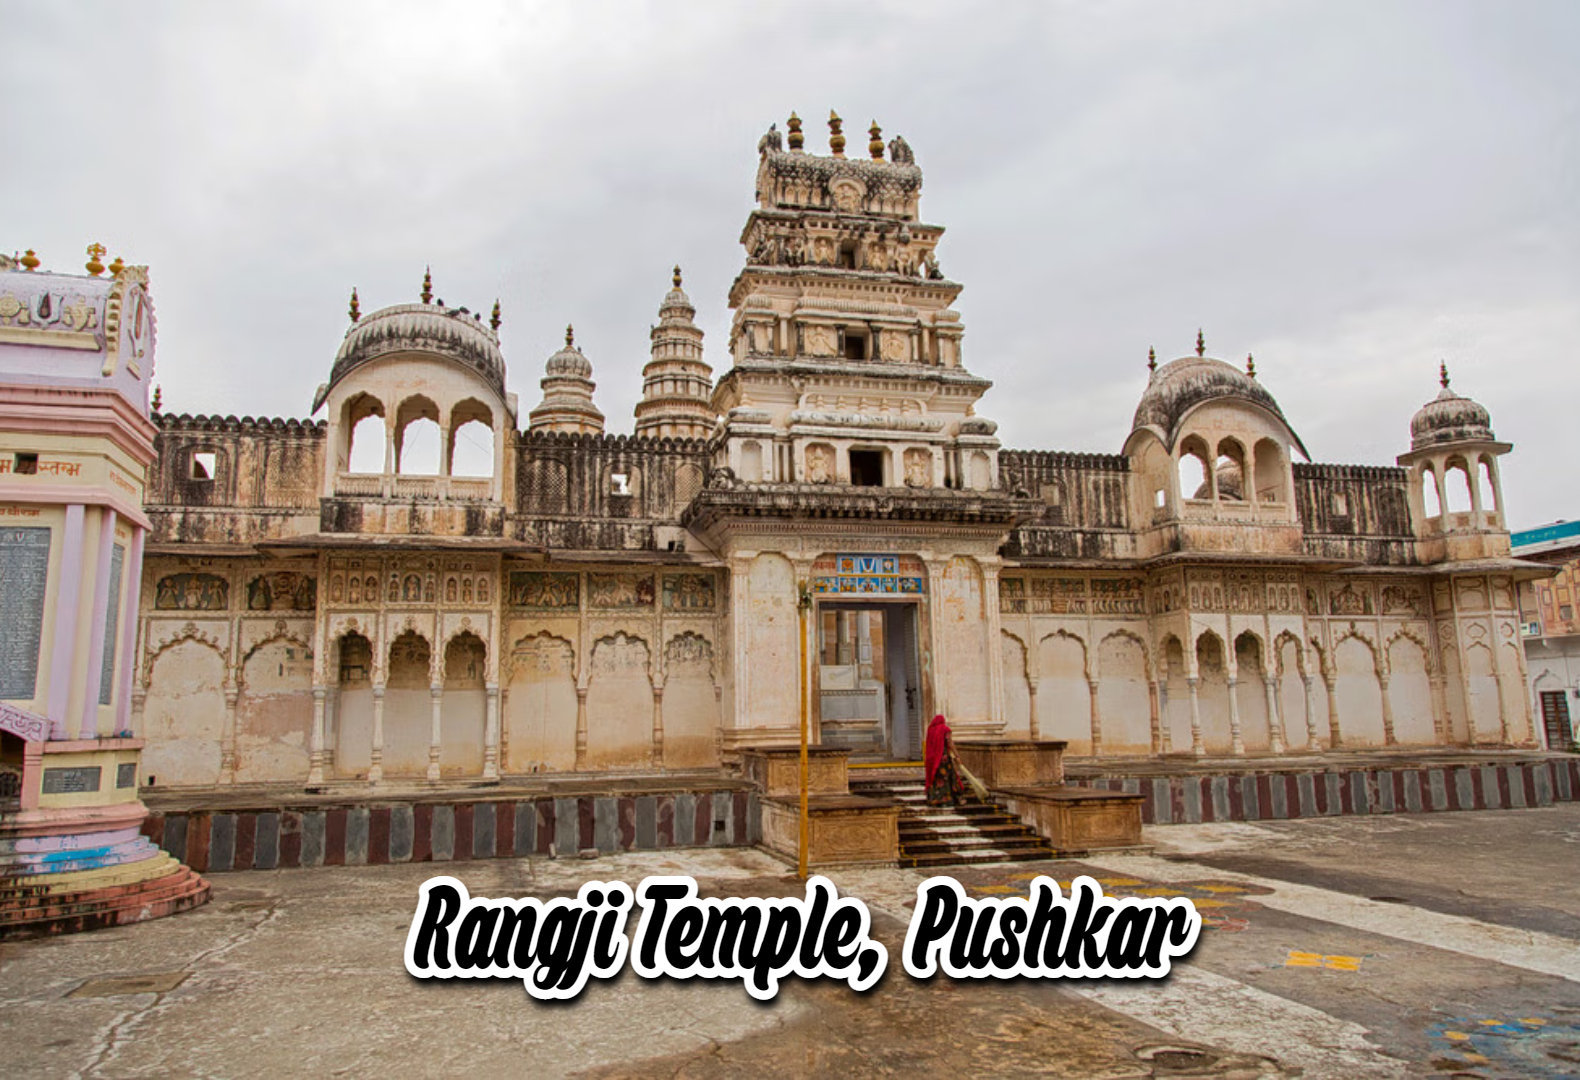 rangji temple pushkar, best places to visit in pushkar